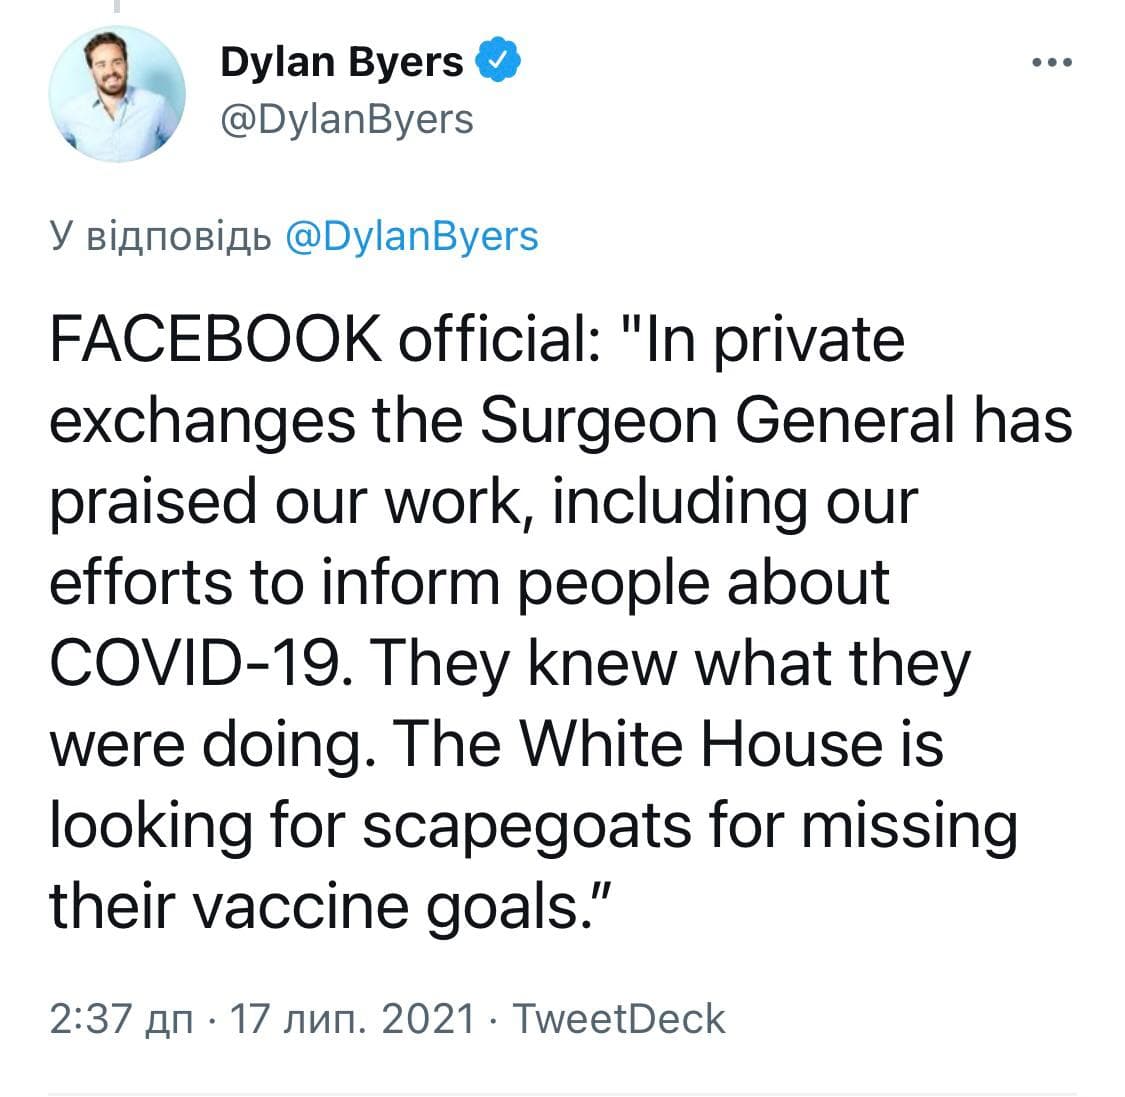 Байден обвинил Facebook в "убийстве людей" посредством дезинформации о ковиде. Корпорация это опровергла